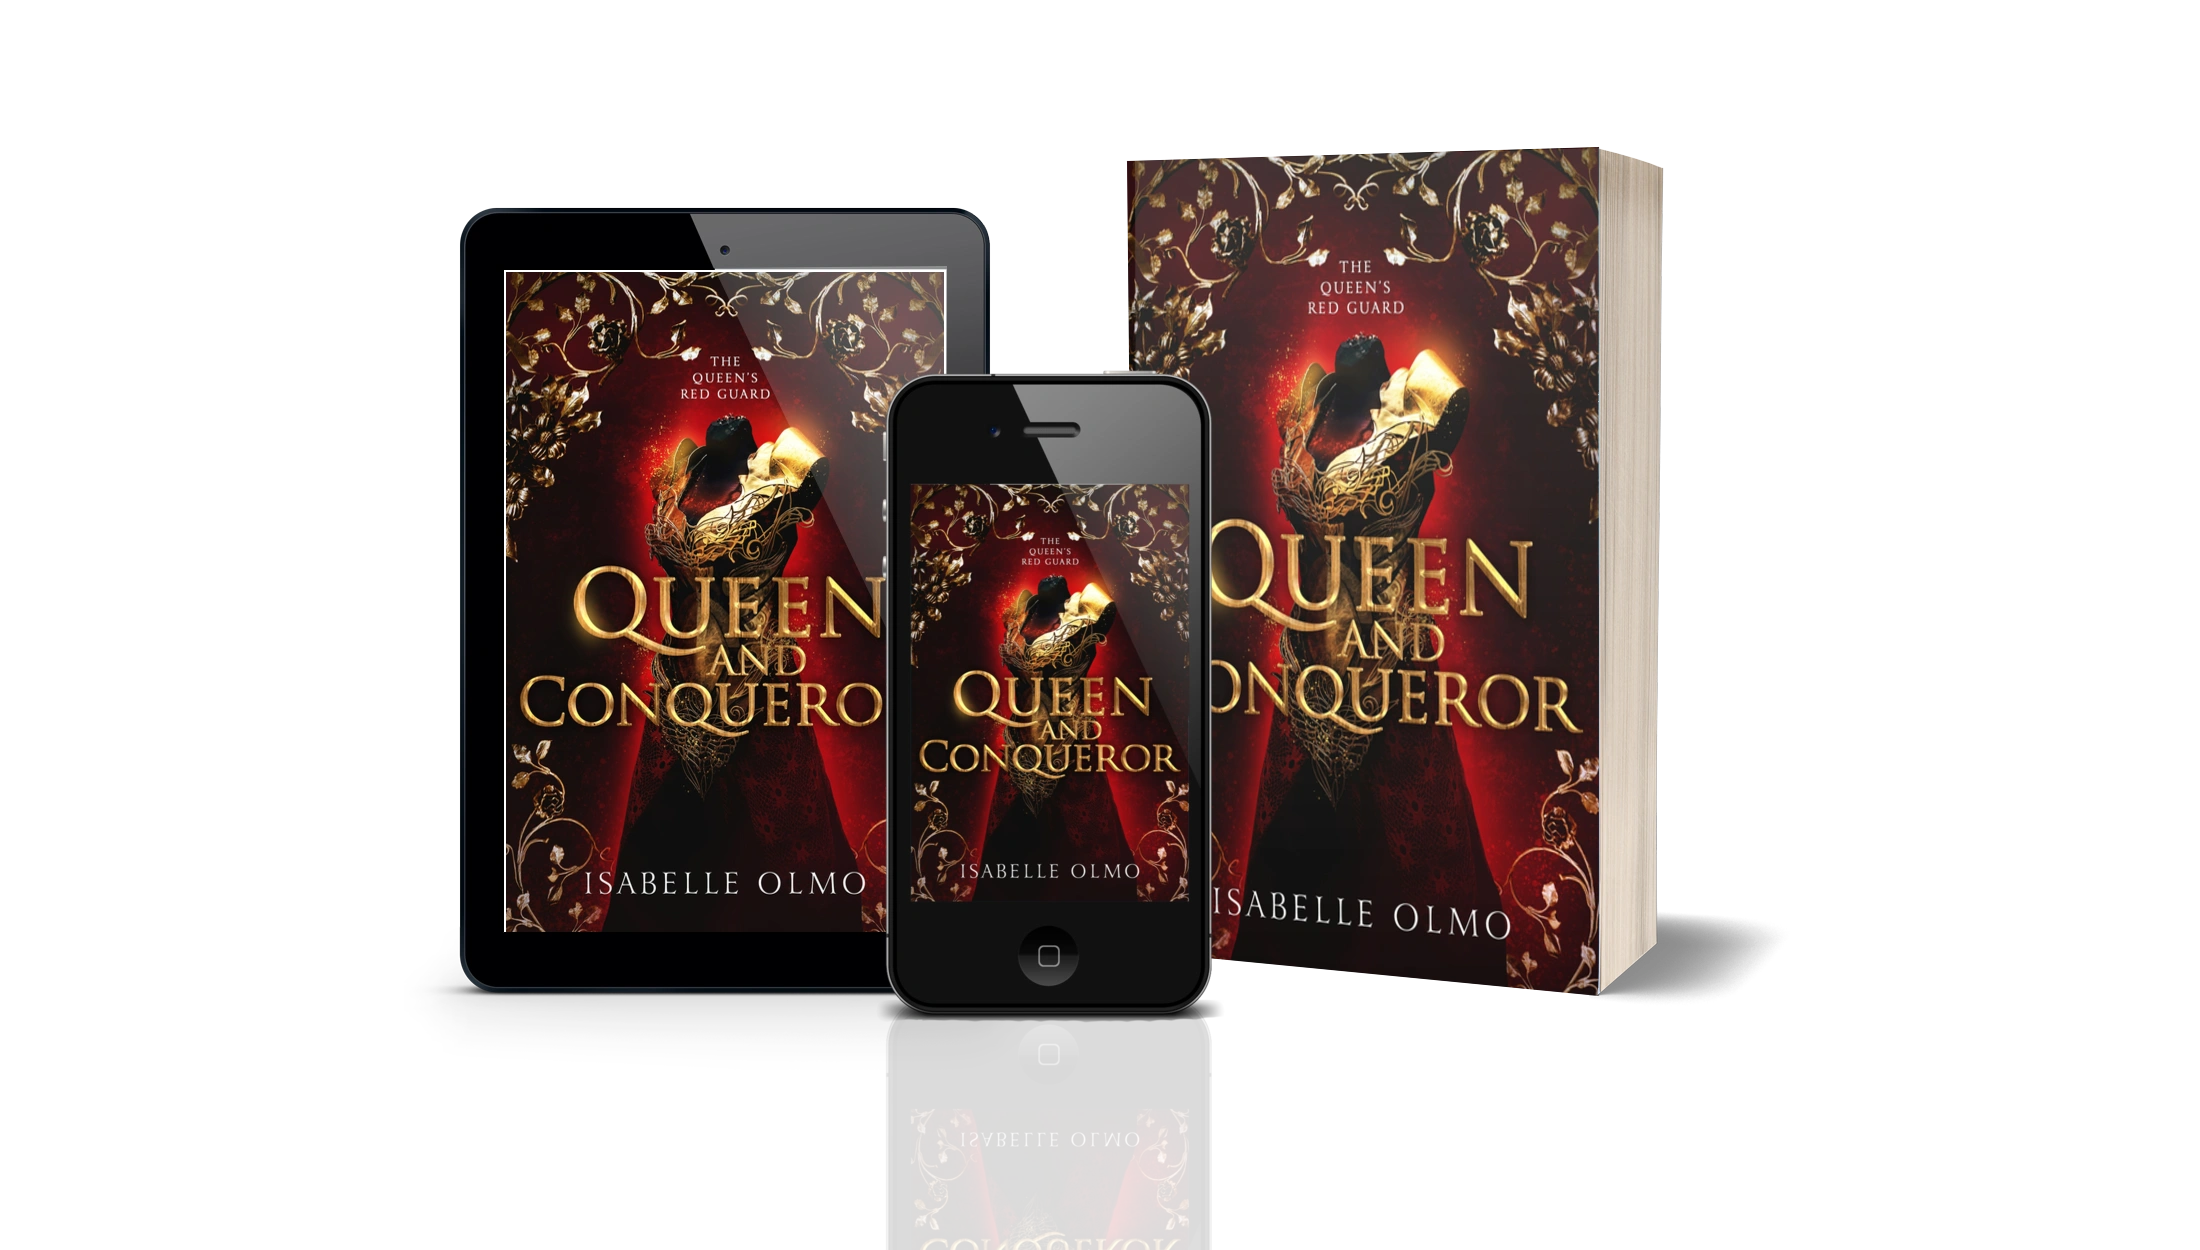 Queen & Conqueror by Isabelle Olmo